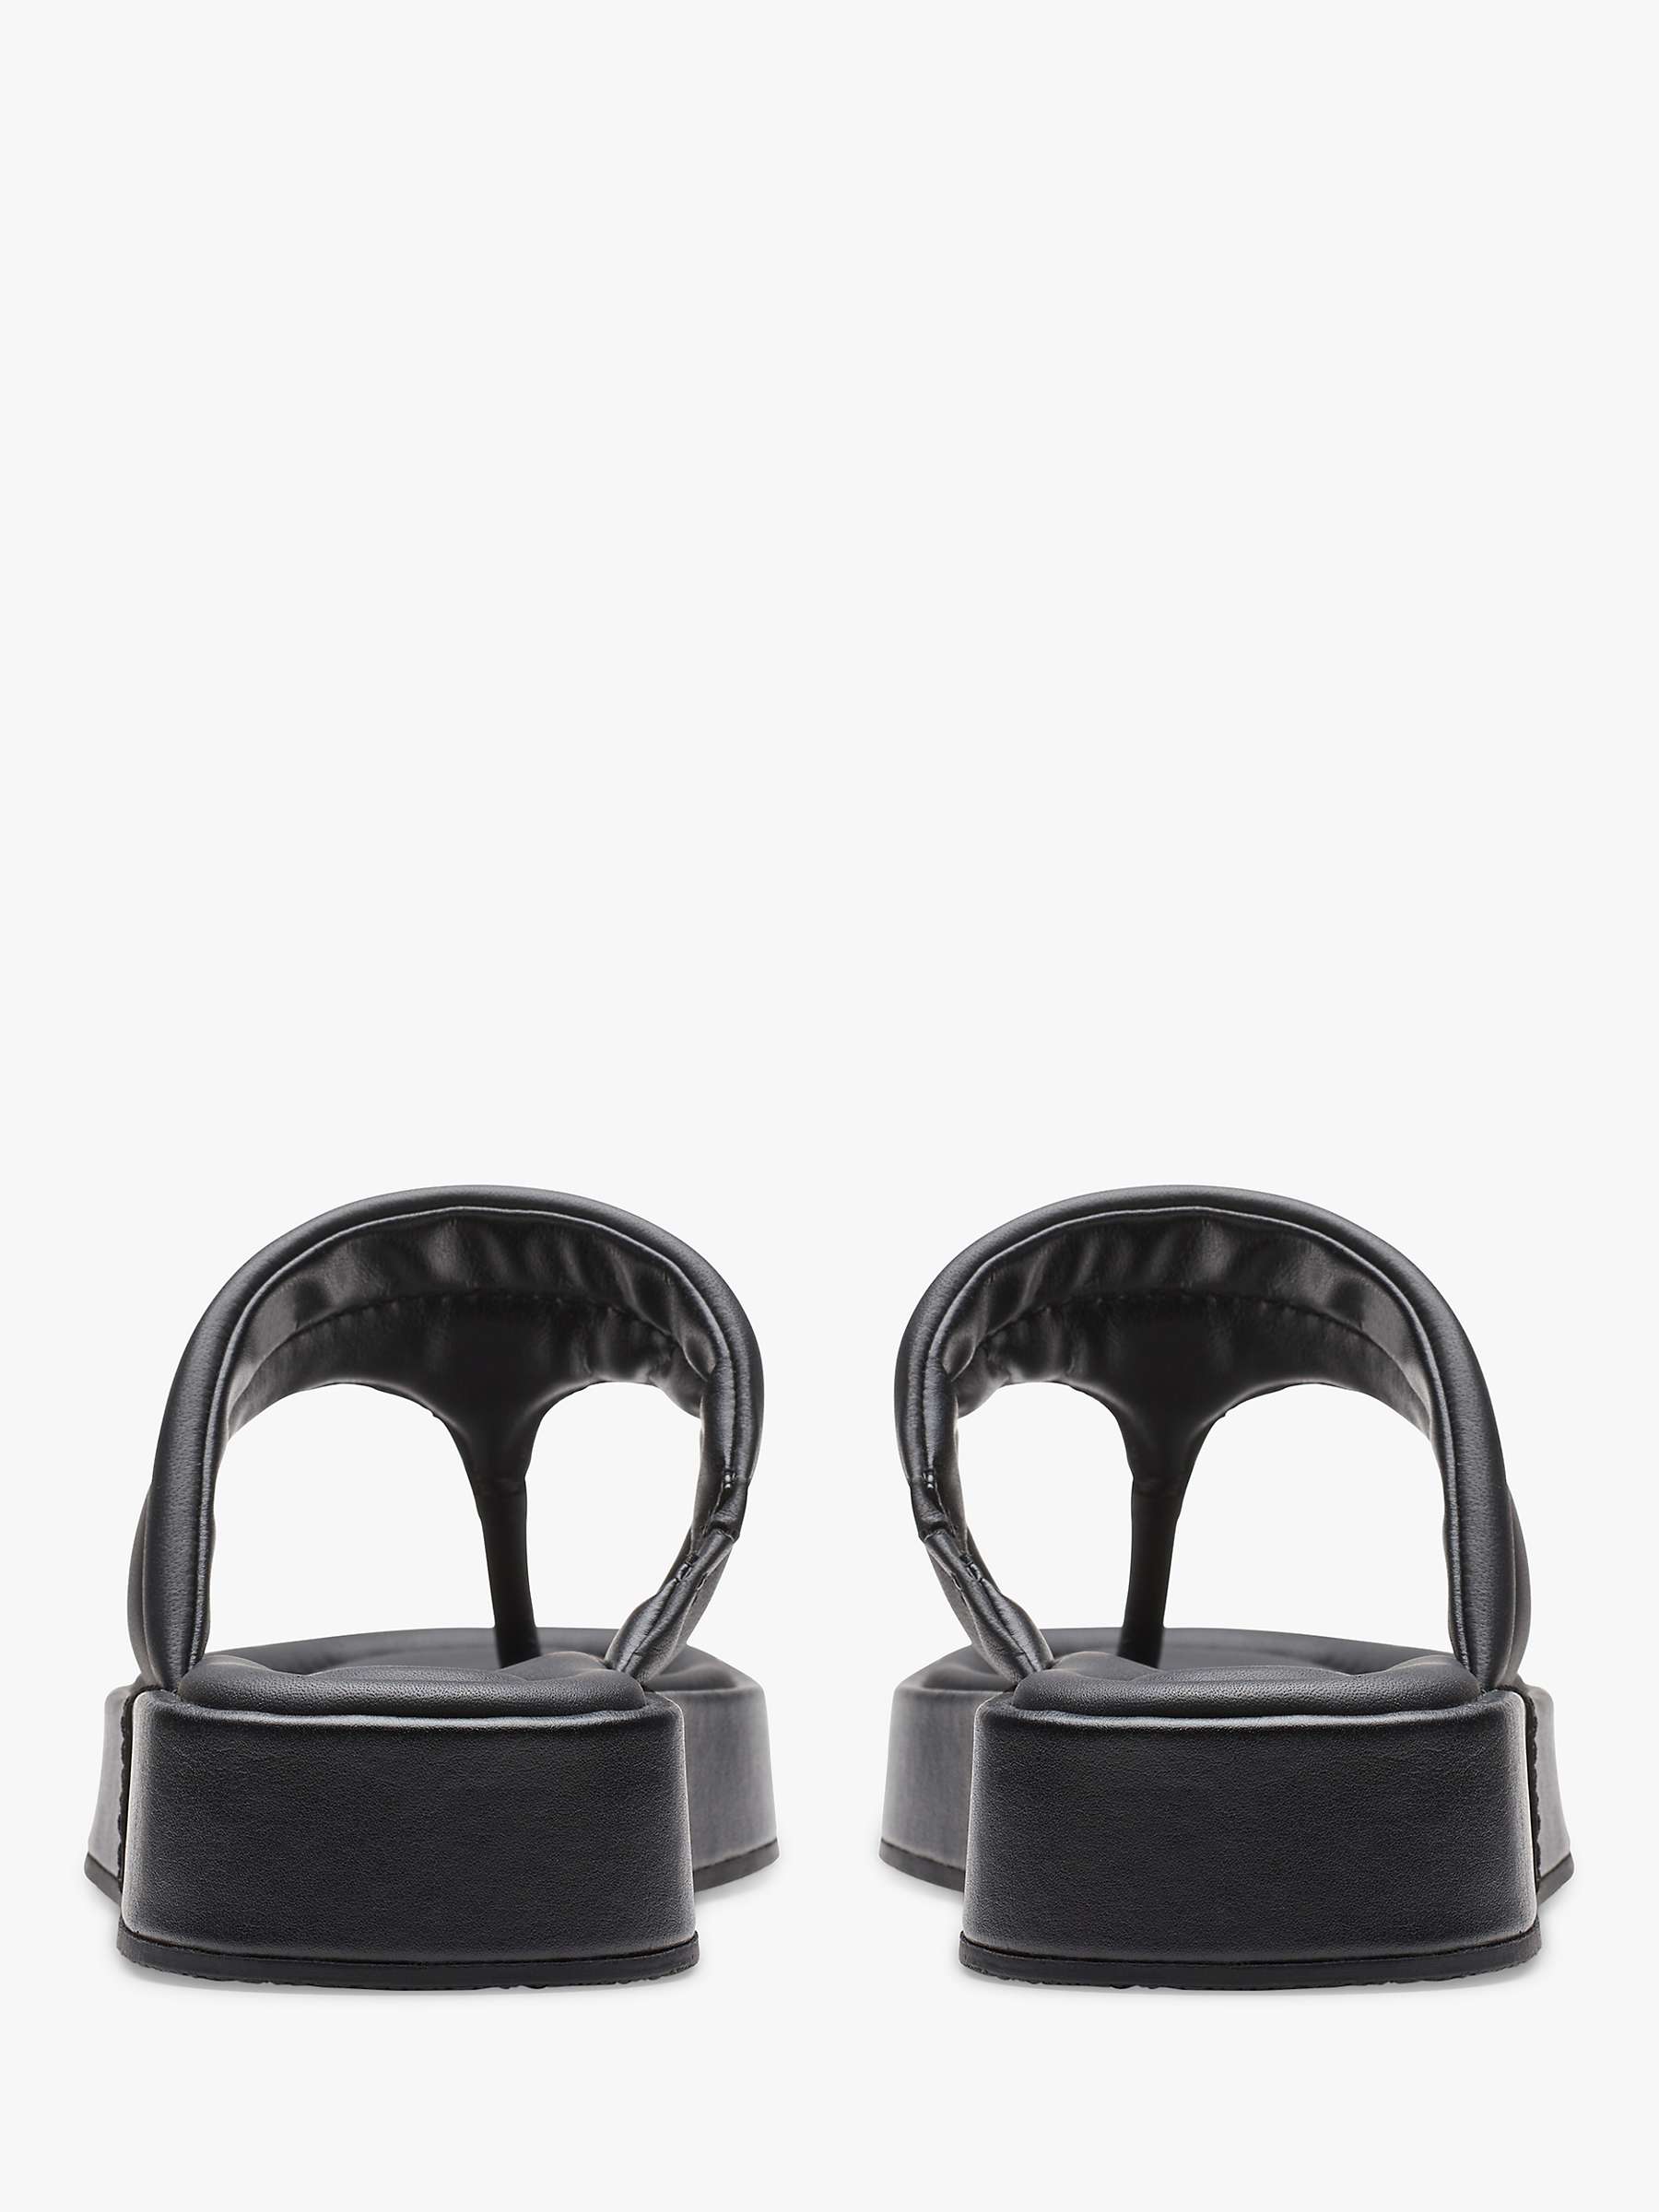 Buy Clarks Alda Walk Leather Toe Post Sandals, Black Online at johnlewis.com